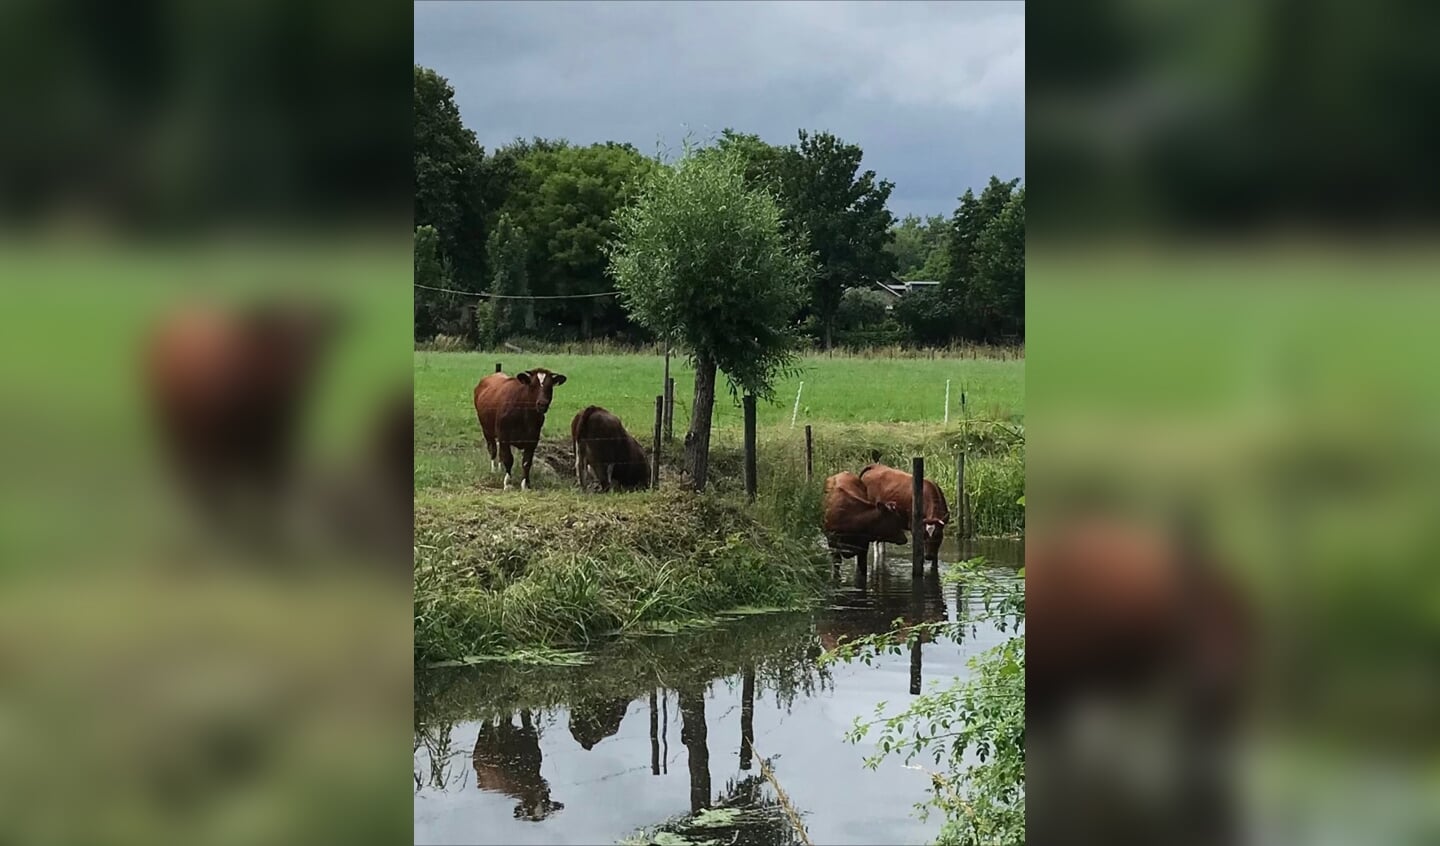 ,,Deze foto is gemaakt op 5 juli 2021, van jonge koeien langs de Langbroeker wetering. Toen was het erg warm en deze jongedames gingen, net als wij, pootjebaden!